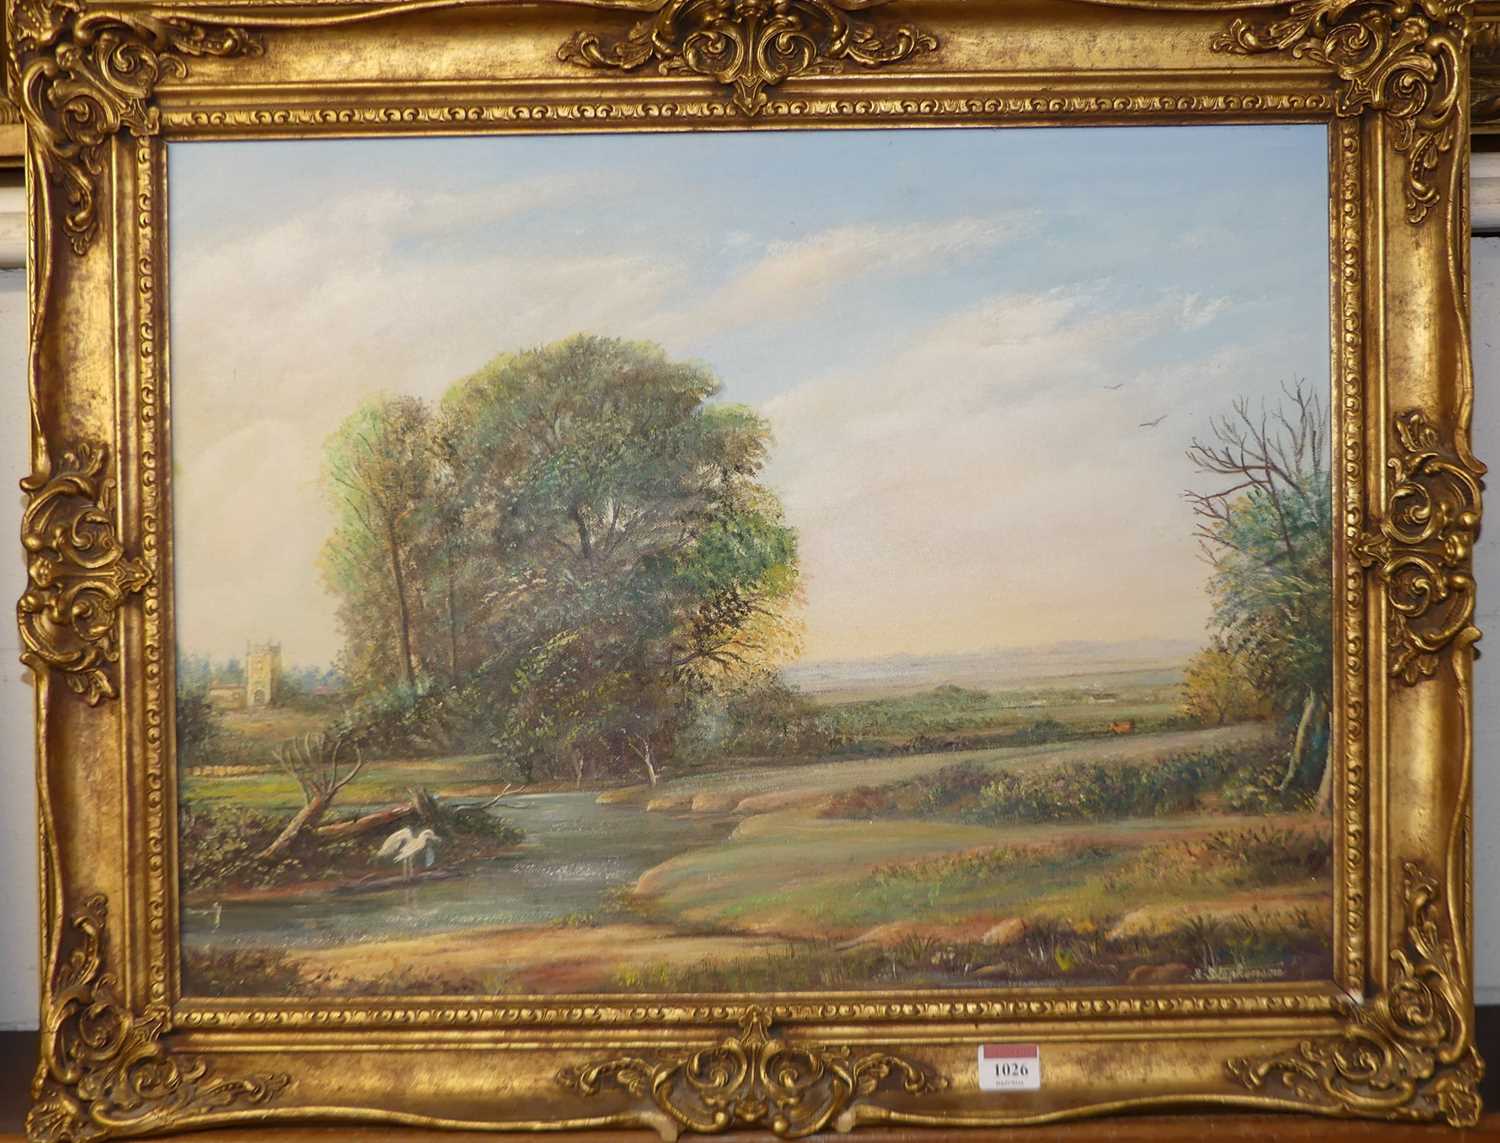 Len Stephenson - Extensive river landscape scene, oil on canvas, signed lower right, 45x60cm